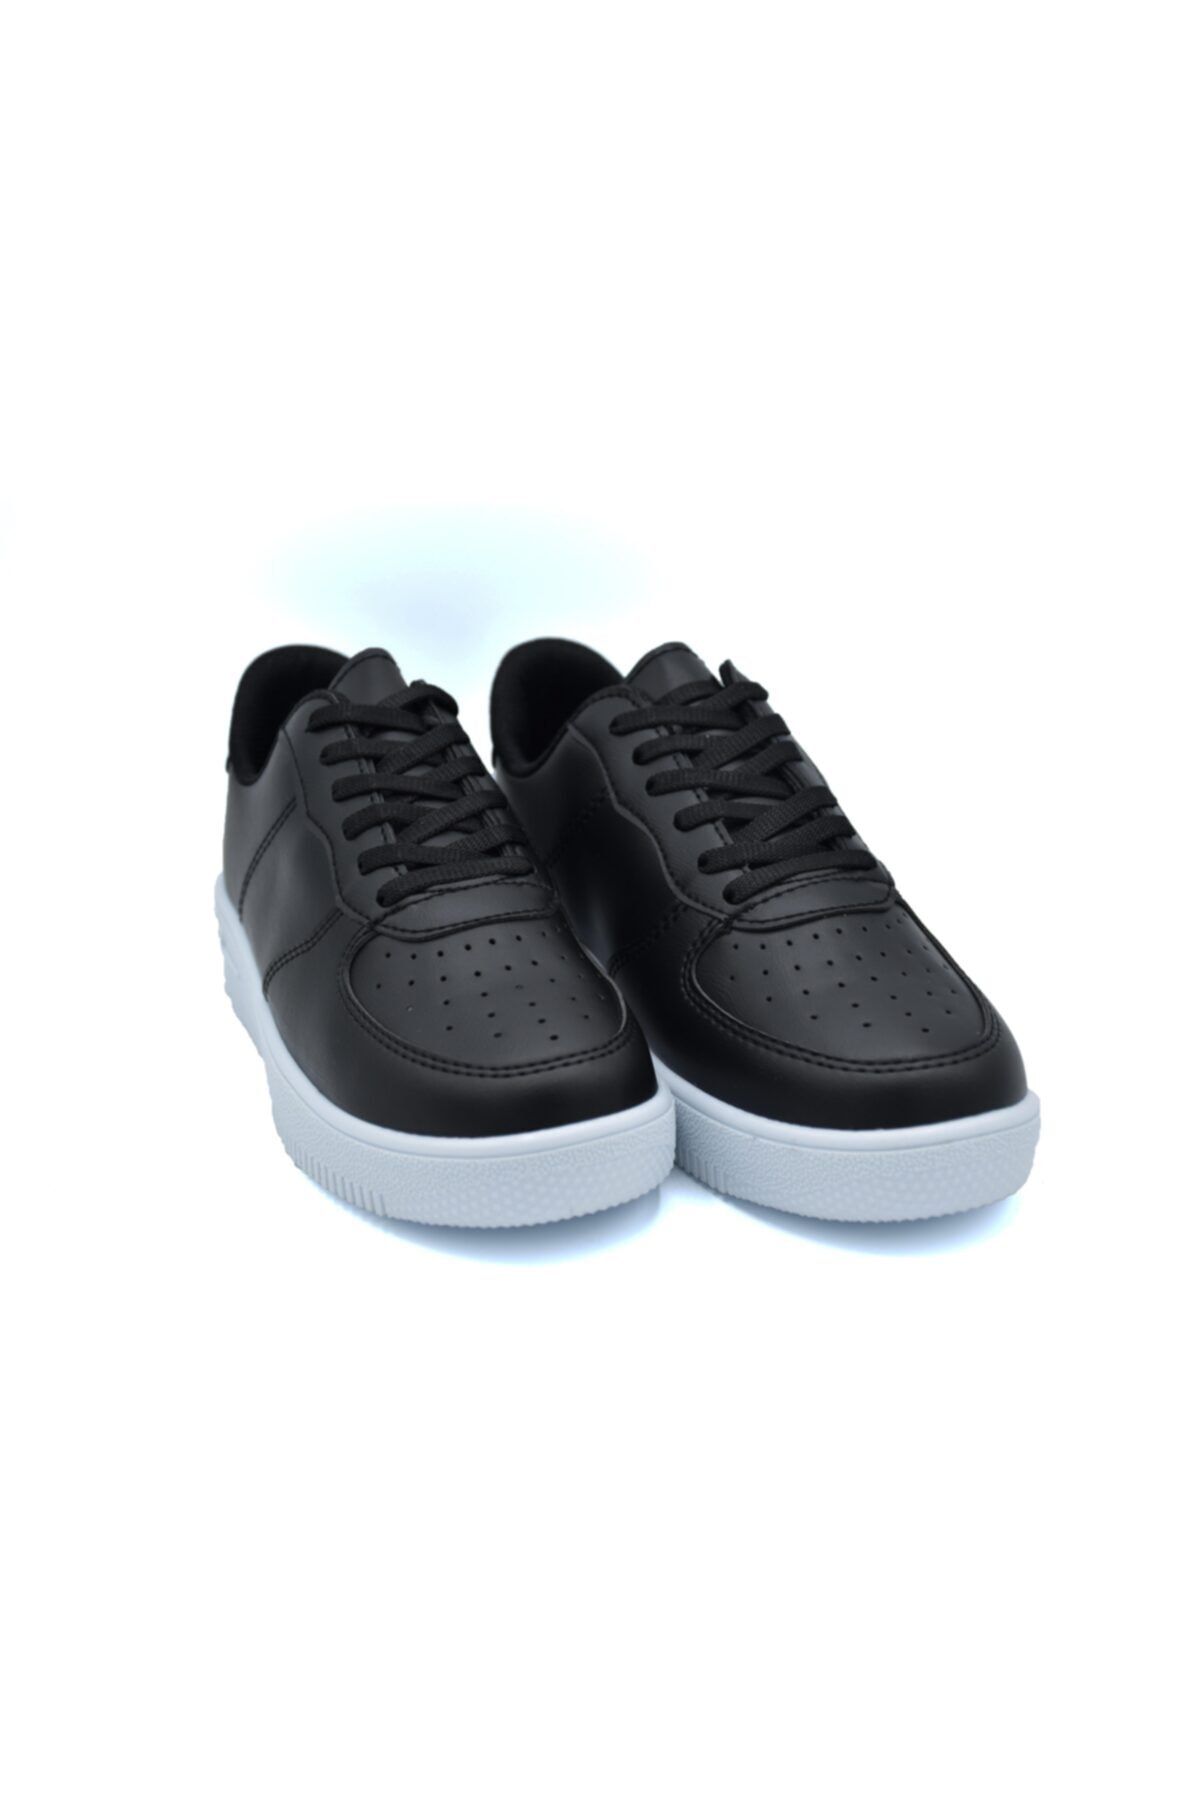 ODESA AYAKKABI MARKET Unisex Beyaz&siyah Spor Ayakkabı